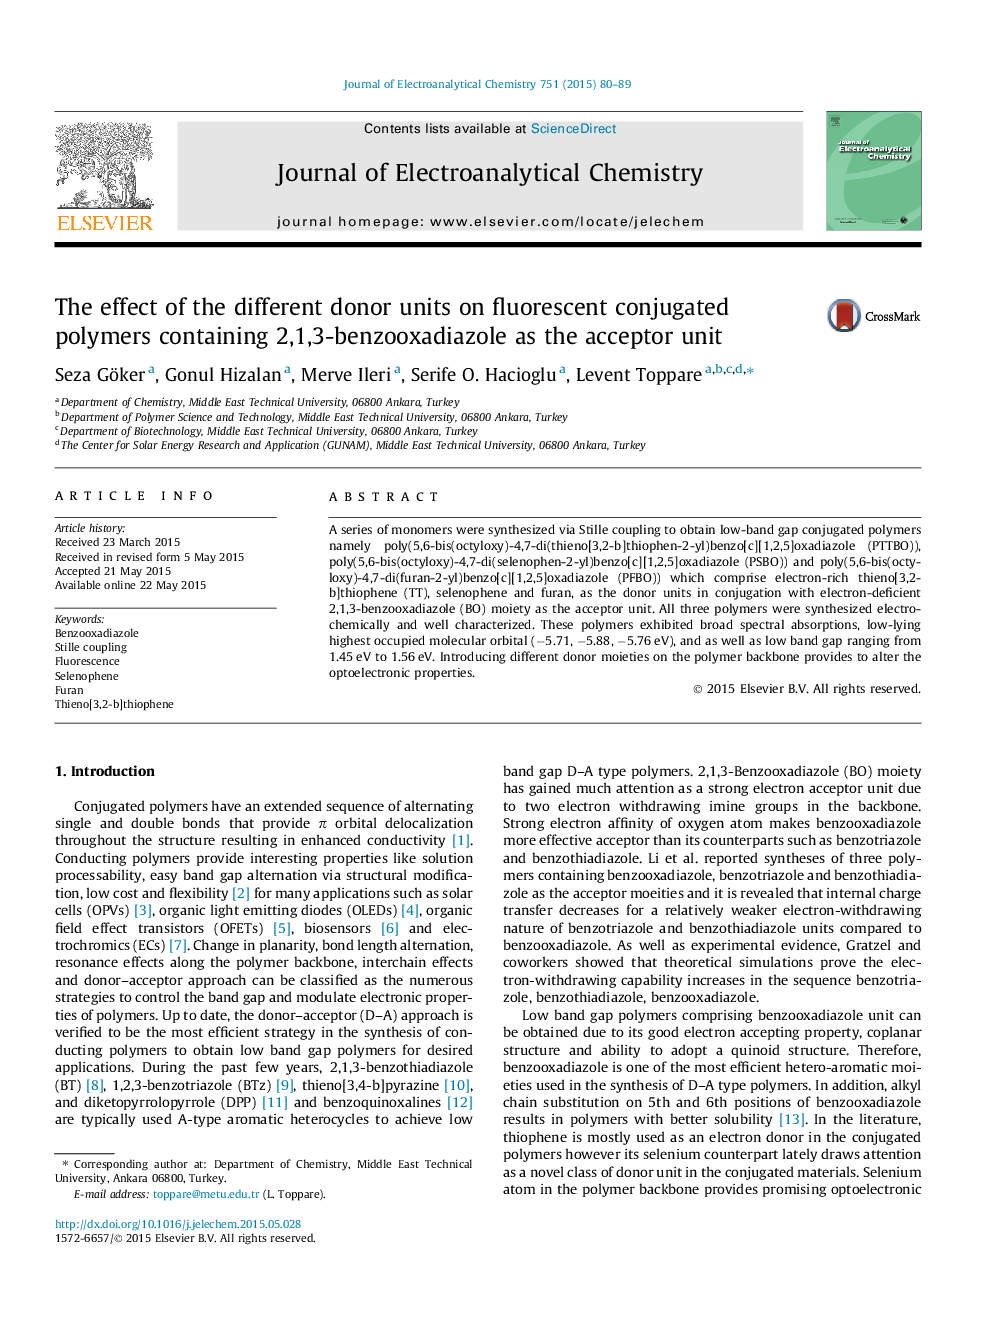 تأثیر واحدهای اهدا کننده مختلف بر روی پلیمرهای کانولاسیون فلورسنت حاوی 2،1،3-بنزوواکادیاازول به عنوان واحدهای پذیرنده 